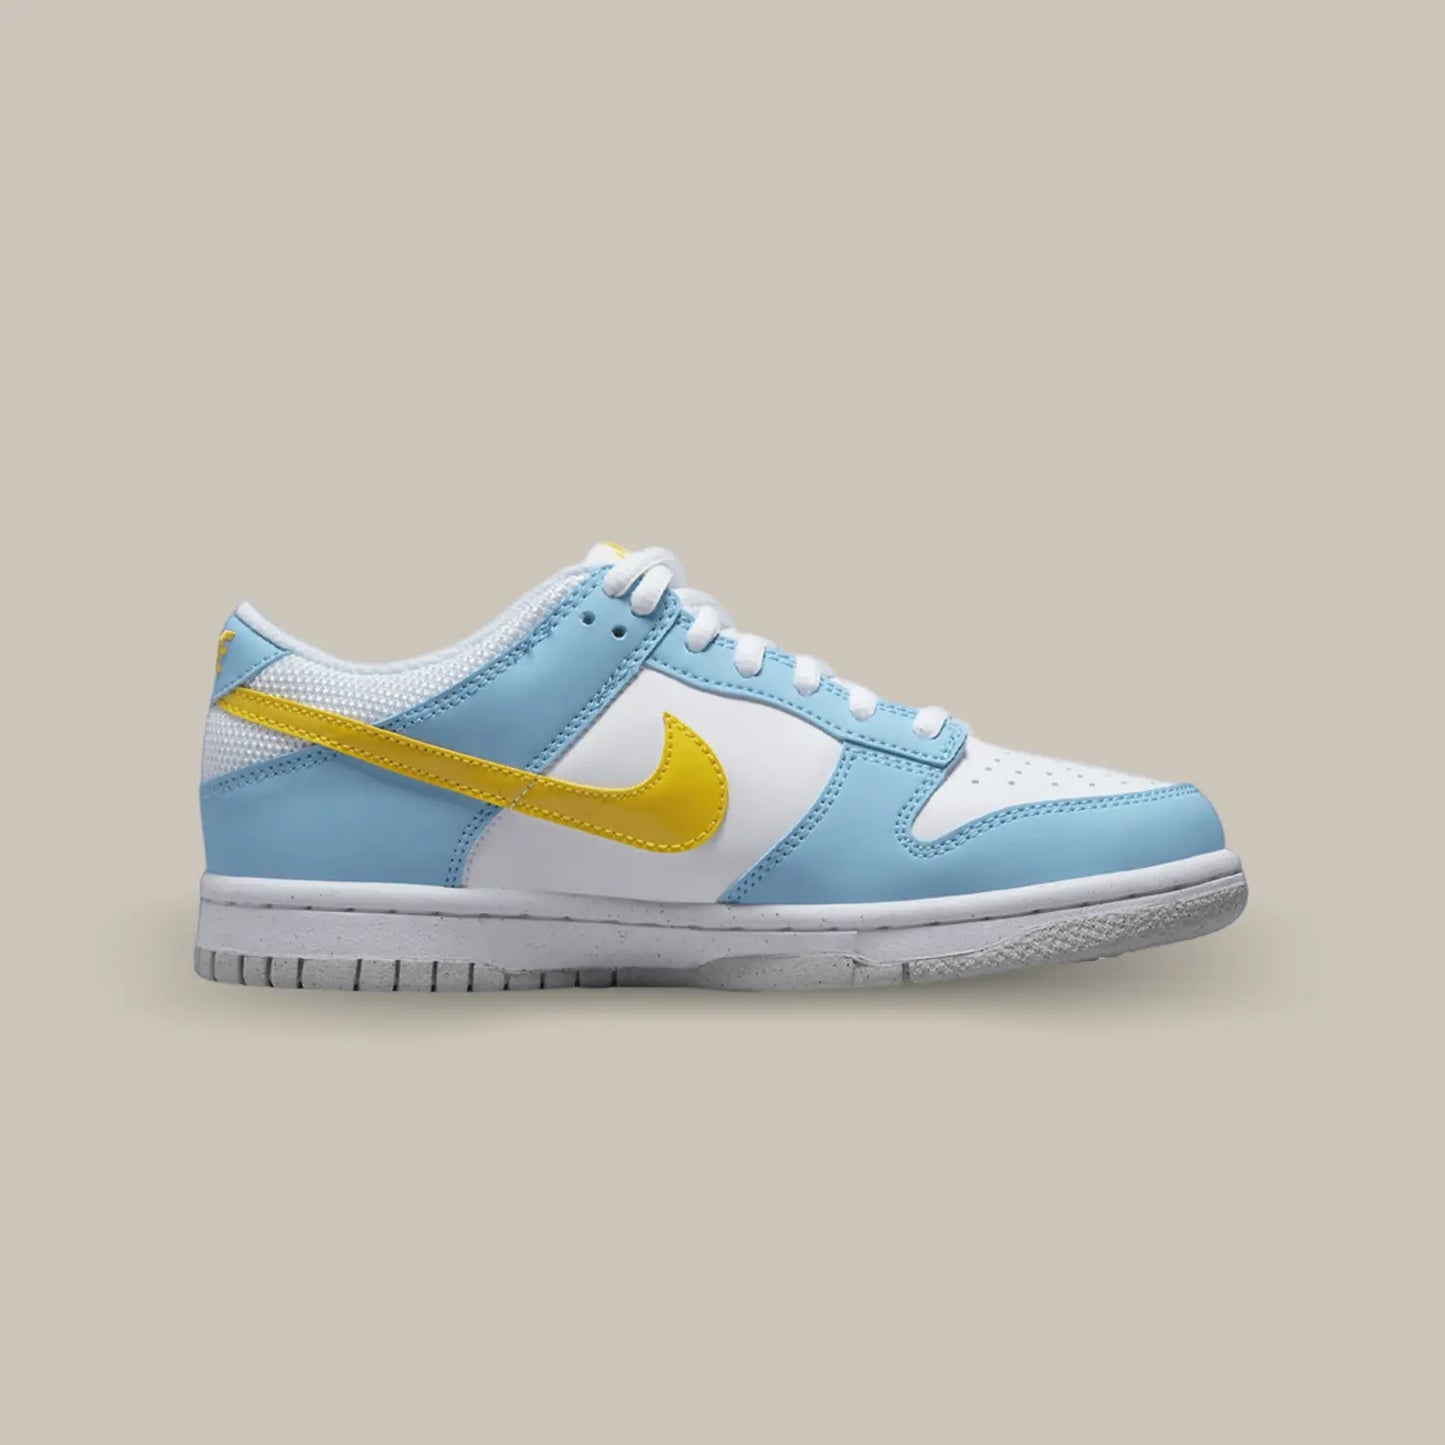 La Nike Dunk Low Homer Simpson de coté avec une base blanche, des empiècements bleu clair et un swoosh jaune à l'image de Homer Simpson.